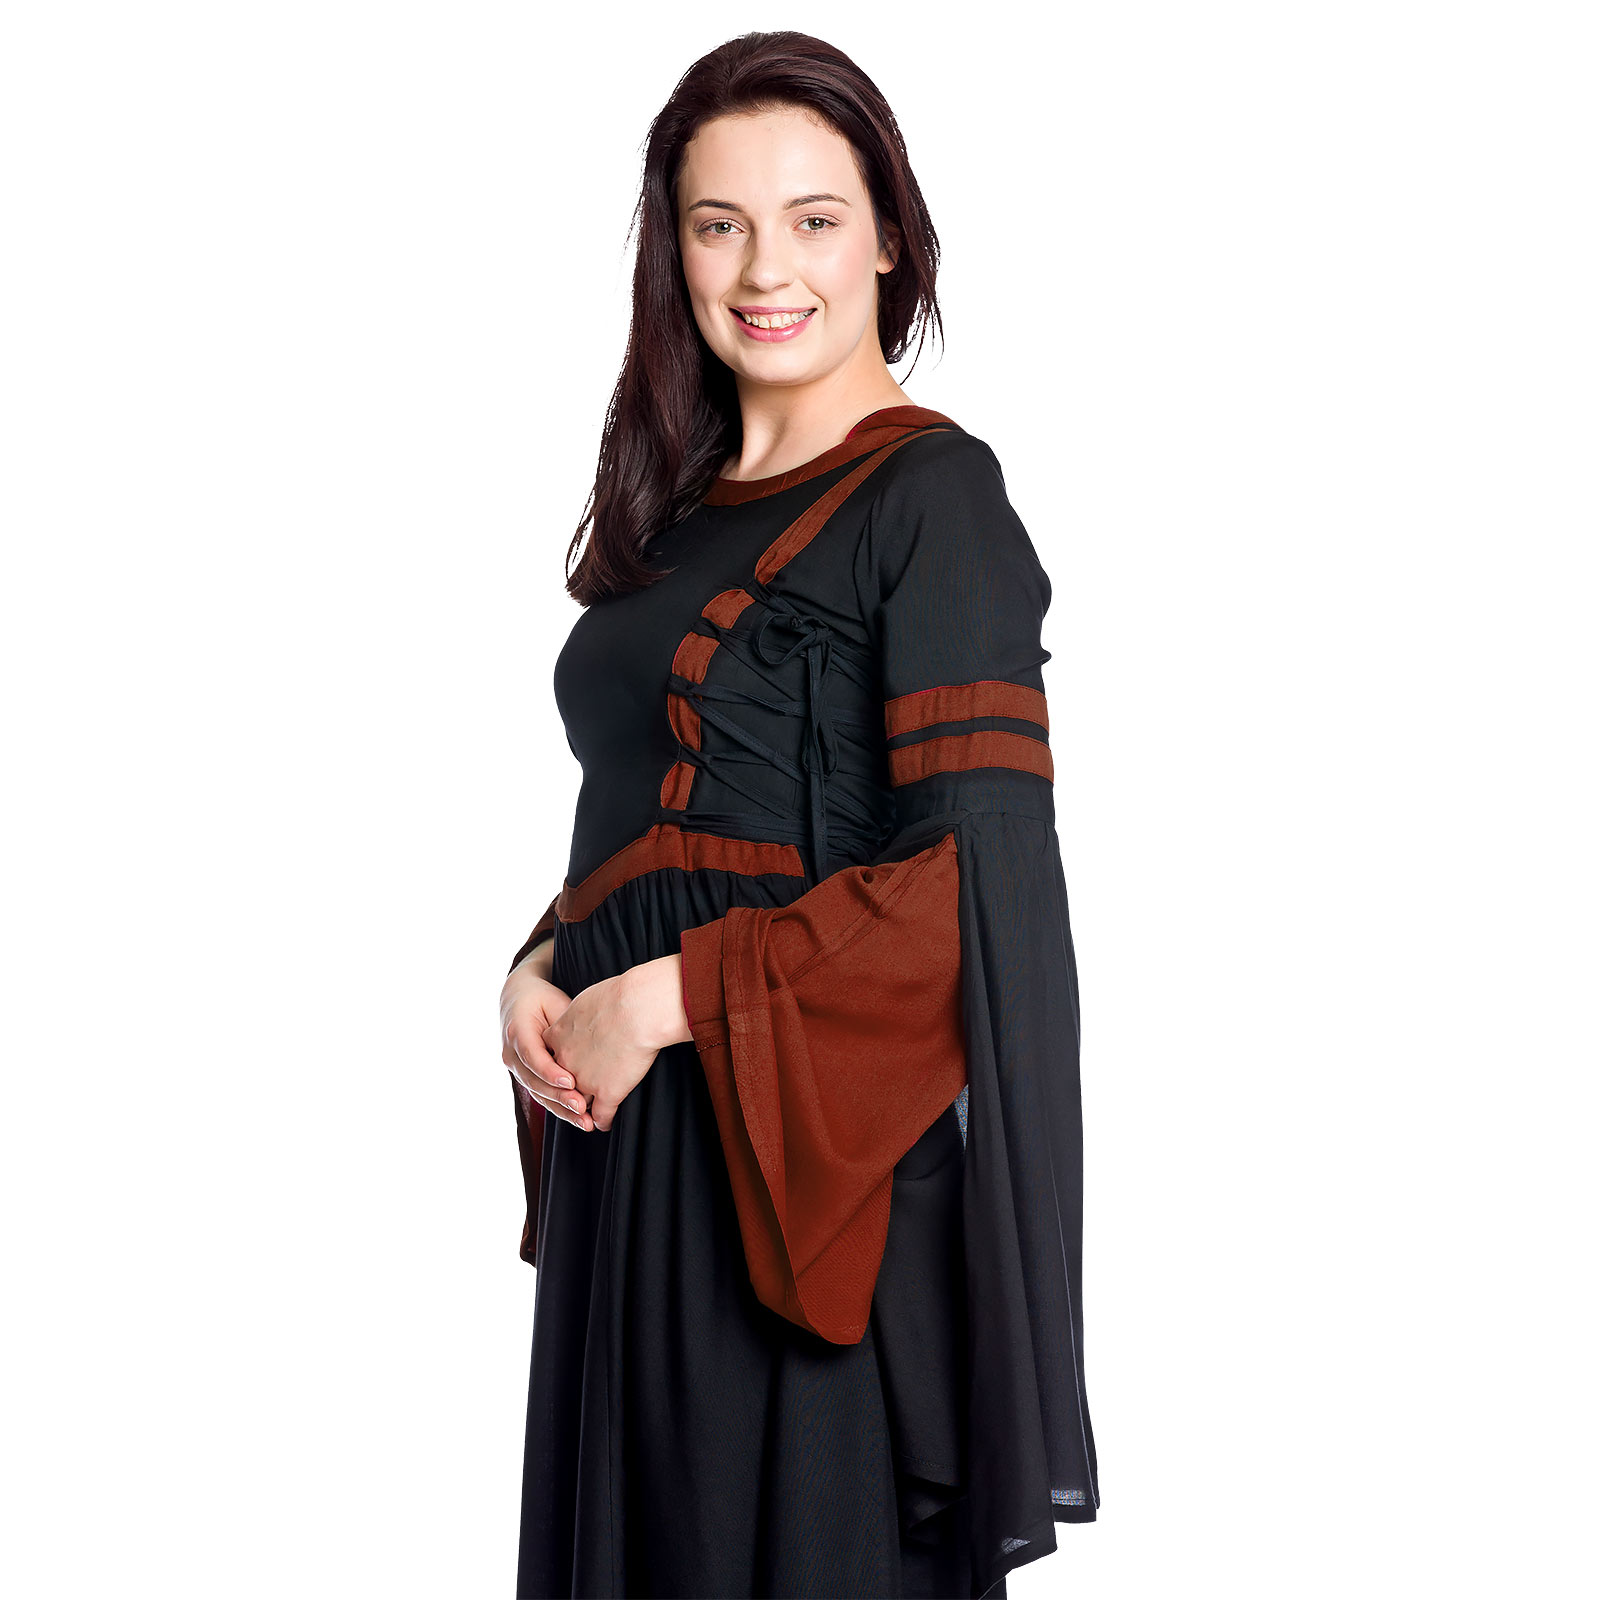 Robe médiévale à capuche Isolde noir-rouge